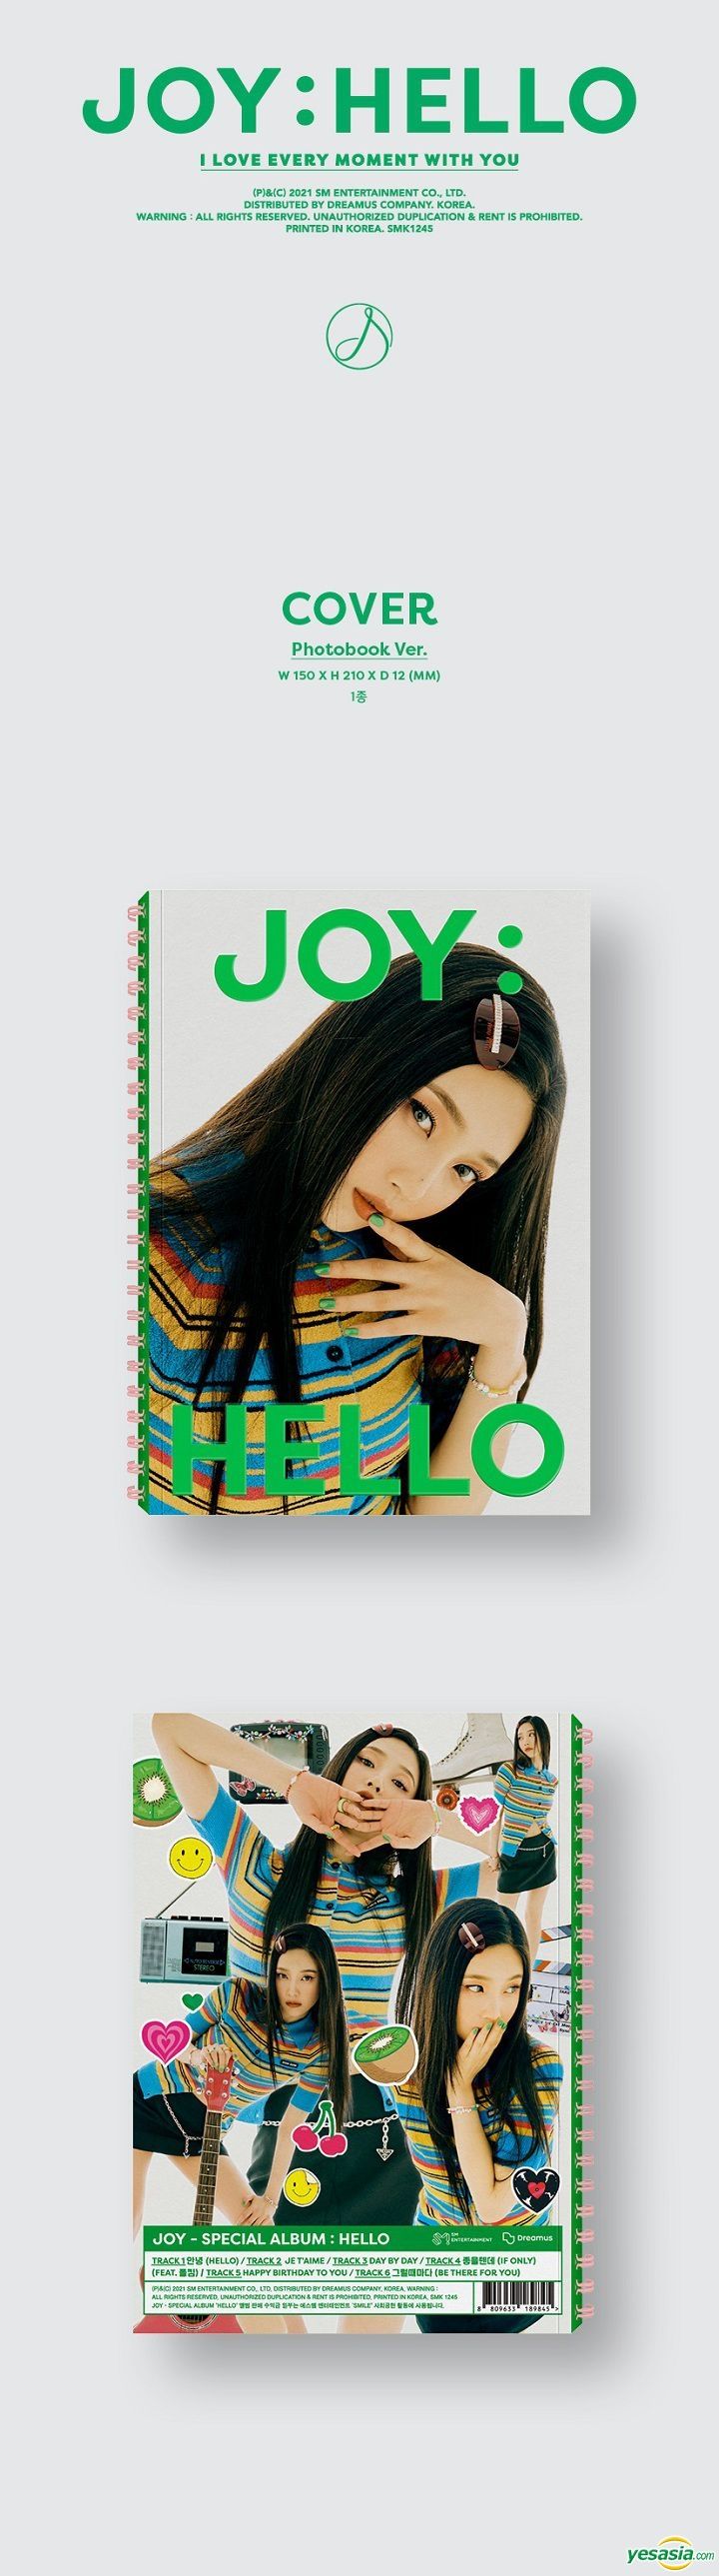 YESASIA: Image Gallery - Red Velvet : Joy Special Album - Hello